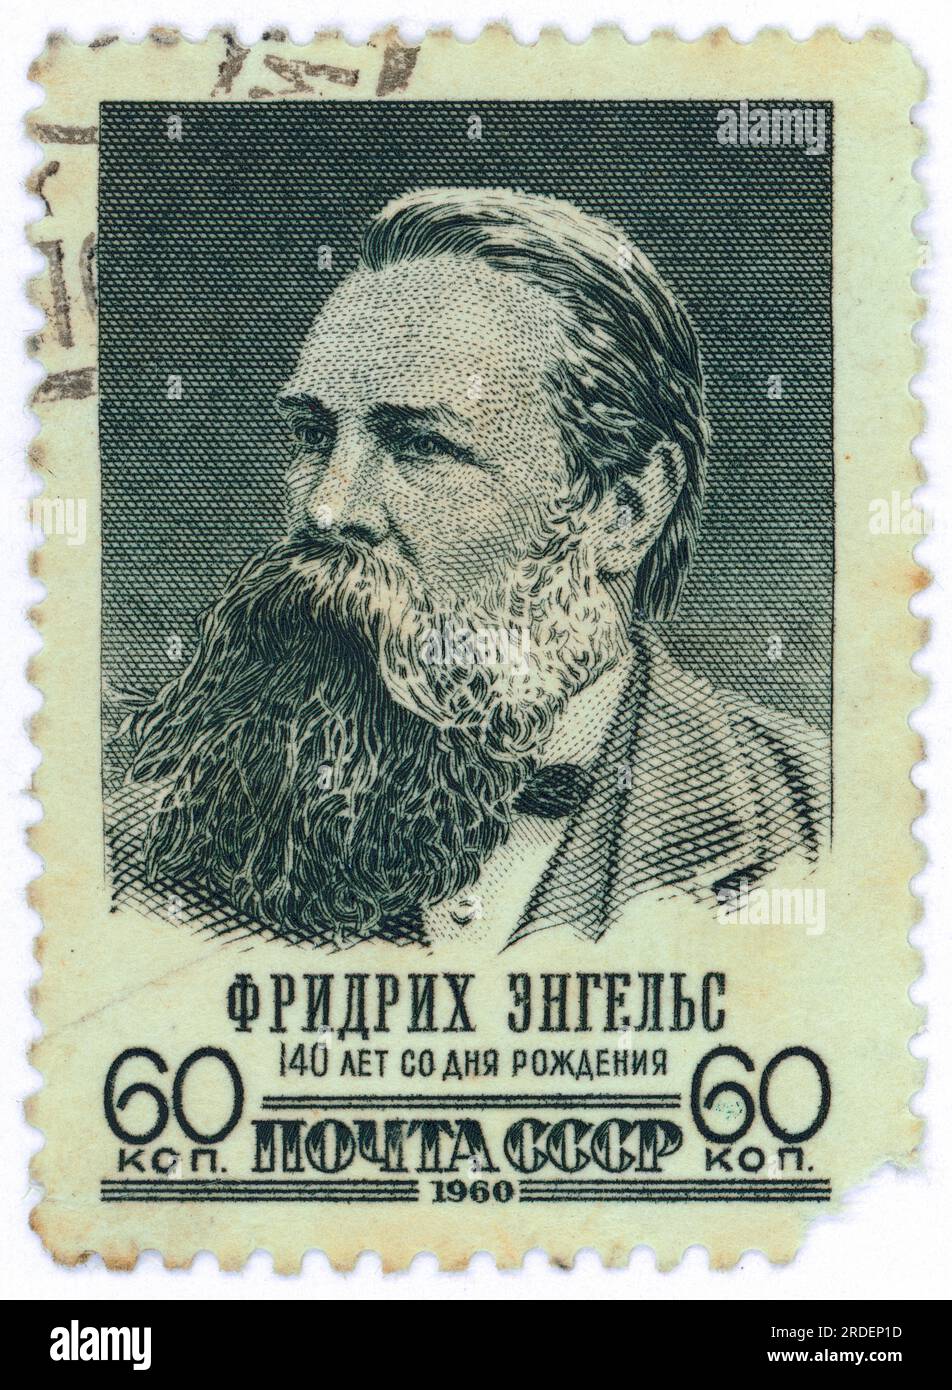 Friedrich Engels – 140. Geburtstag. Briefmarke, ausgestellt in der UdSSR im Jahr 1960. Nennwert: 60 Kopeks. Stockfoto